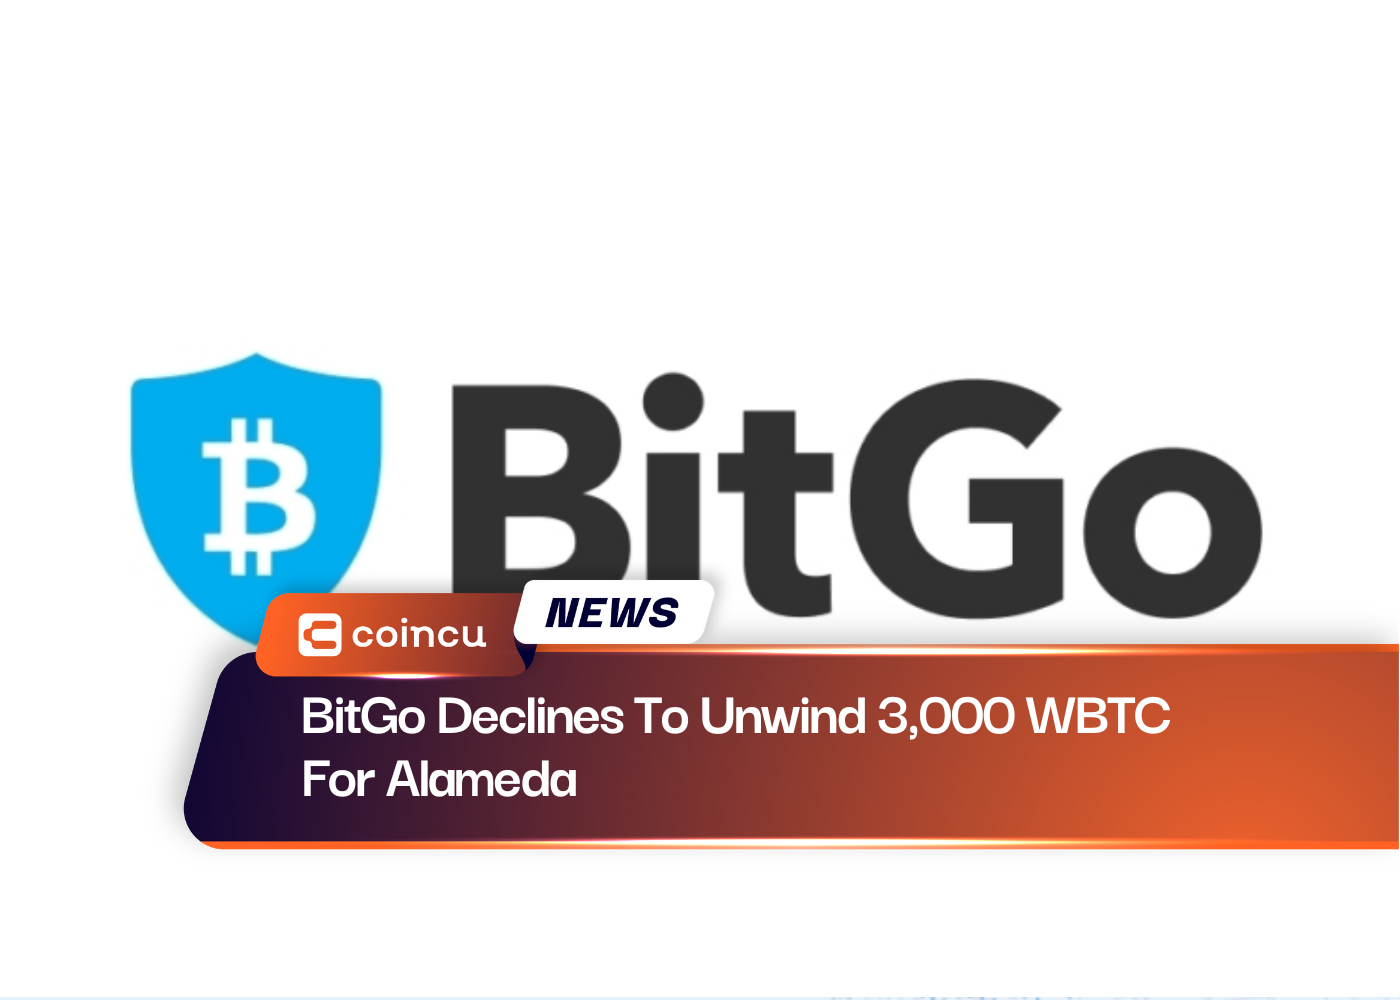 BitGo Declines To Unwind 3,000 WBTC For Alameda